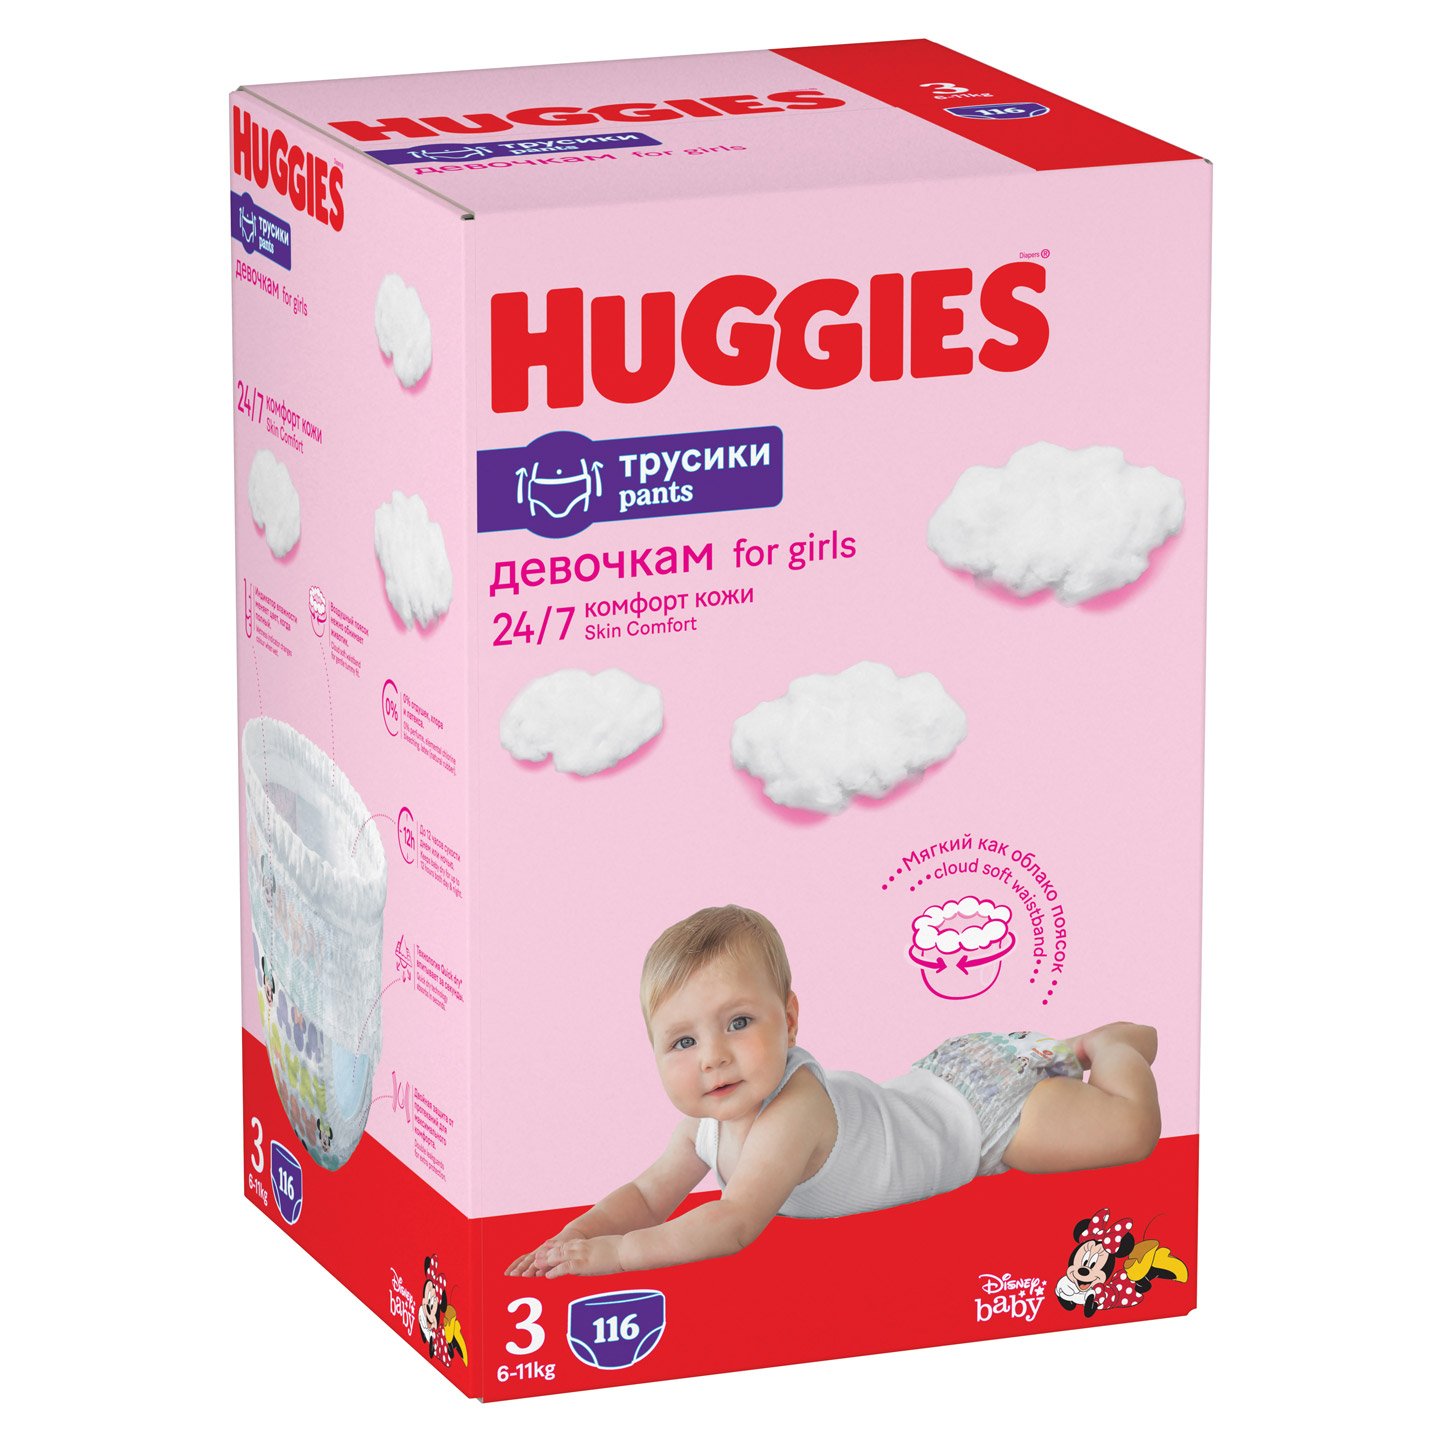 Набор трусиков-подгузников для девочек Huggies Pants 3 (6-11 кг), 116 шт. (2 уп. по 58 шт.) - фото 2